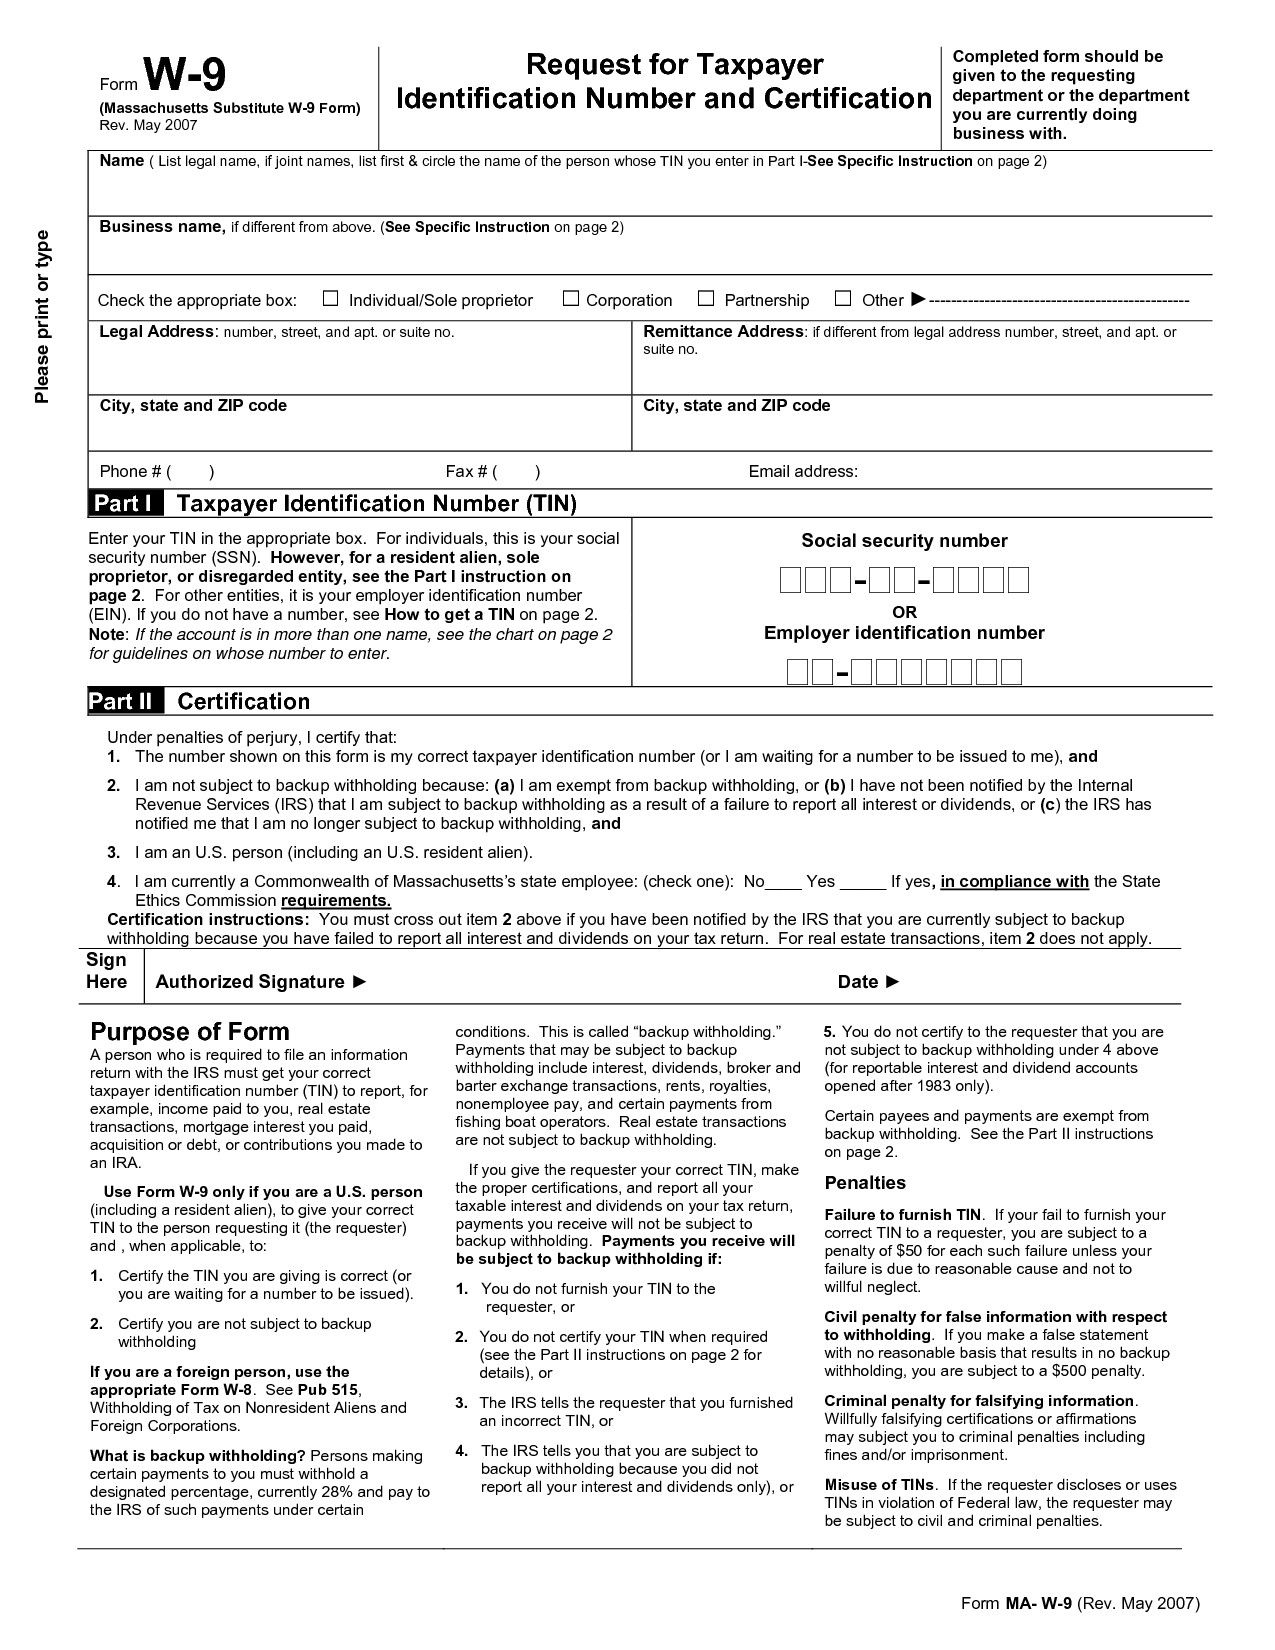 Blank I 9 Form 2020 Printable Calendar Template Printable